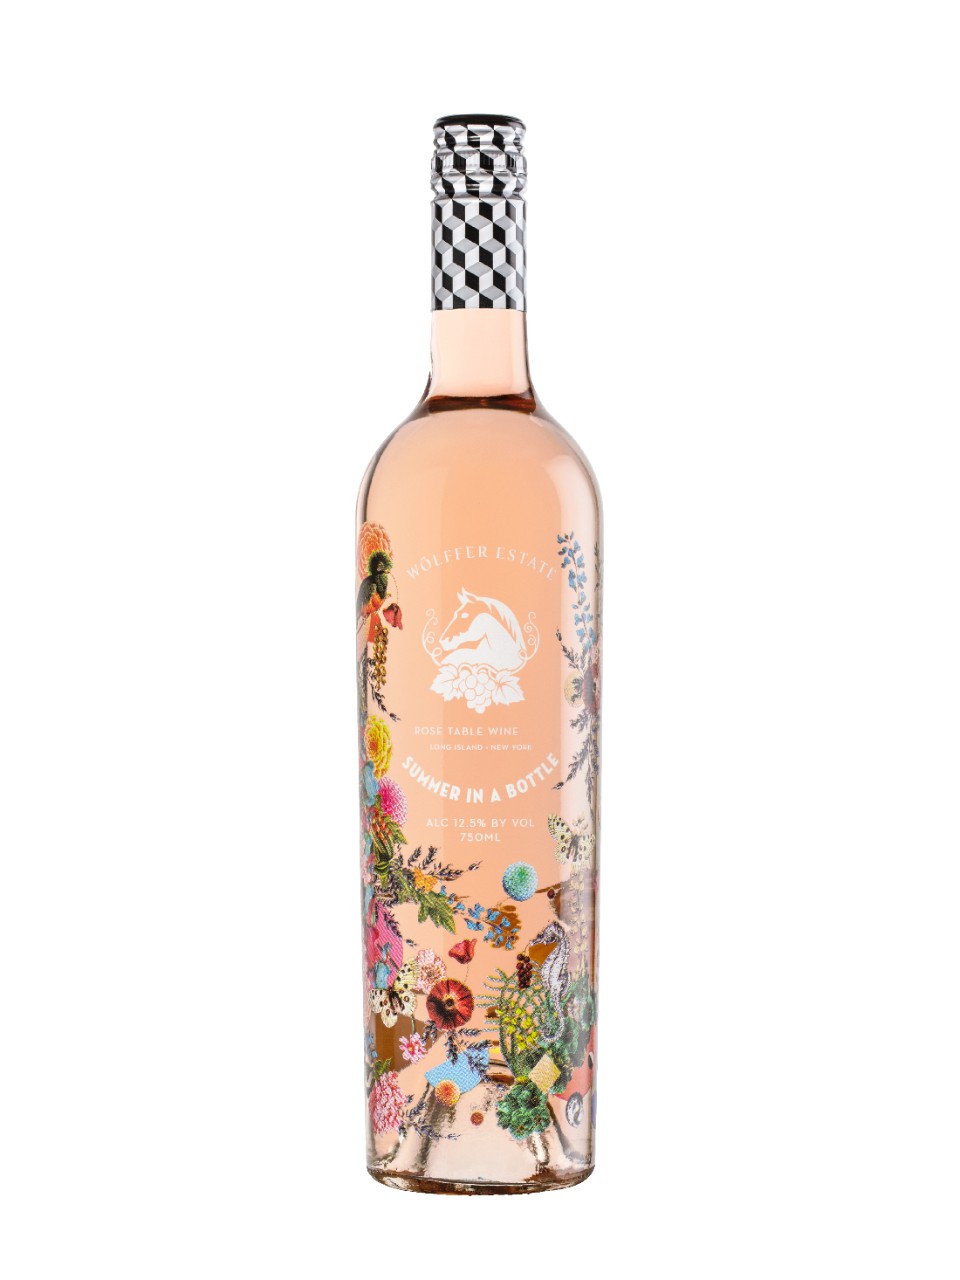 Wolffer Estate Summer in a Bottle Rose 2020